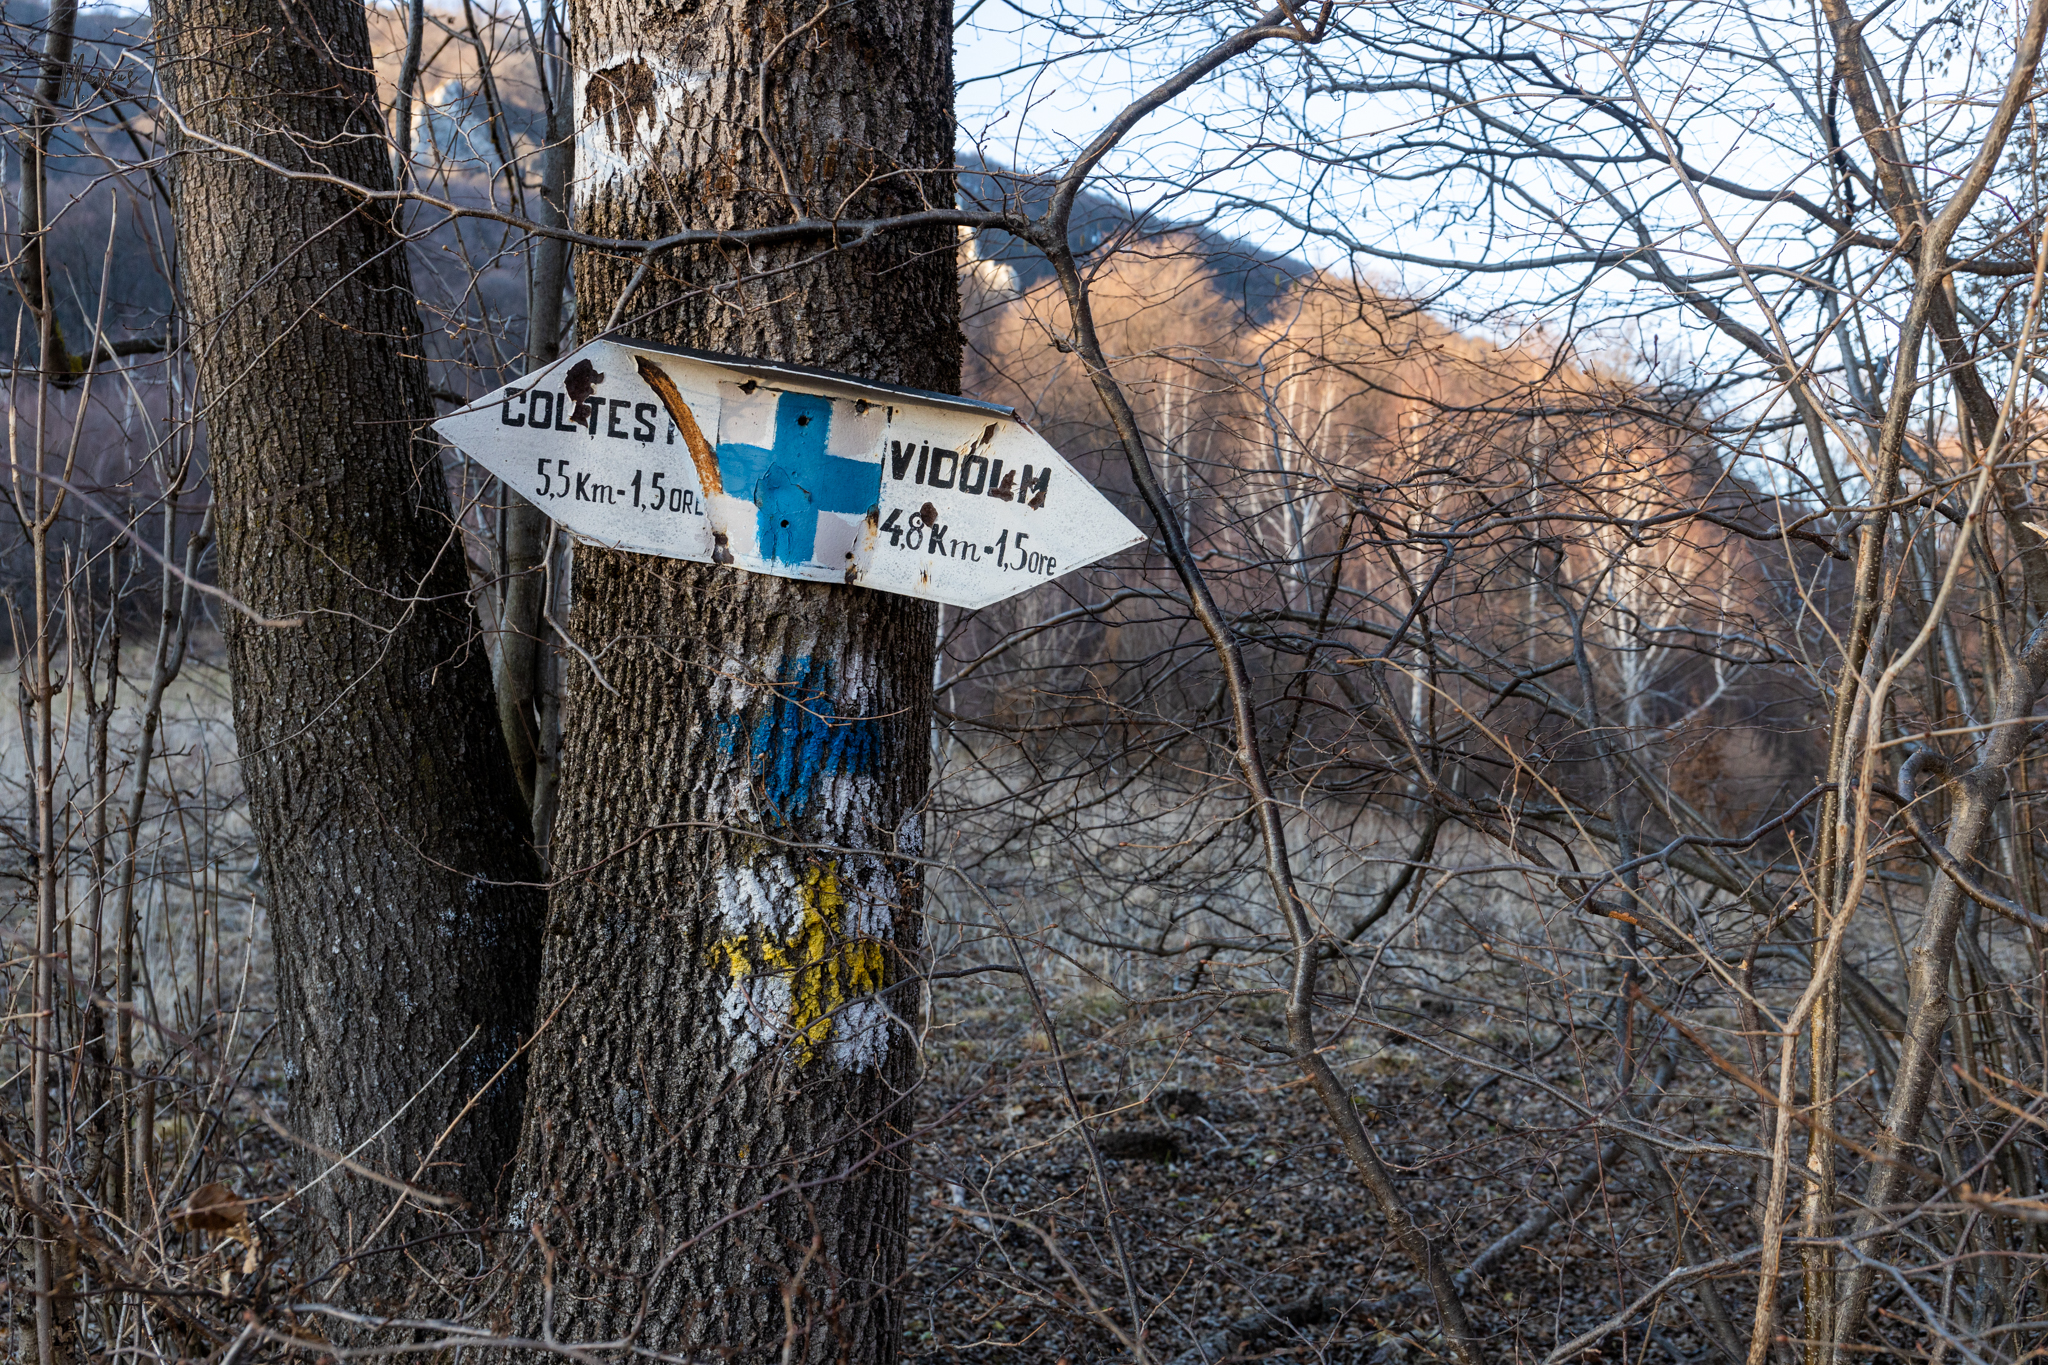  Marcaj Cruce Albastră spre Vidolm, lângă observatorul de animale - Marius Turc